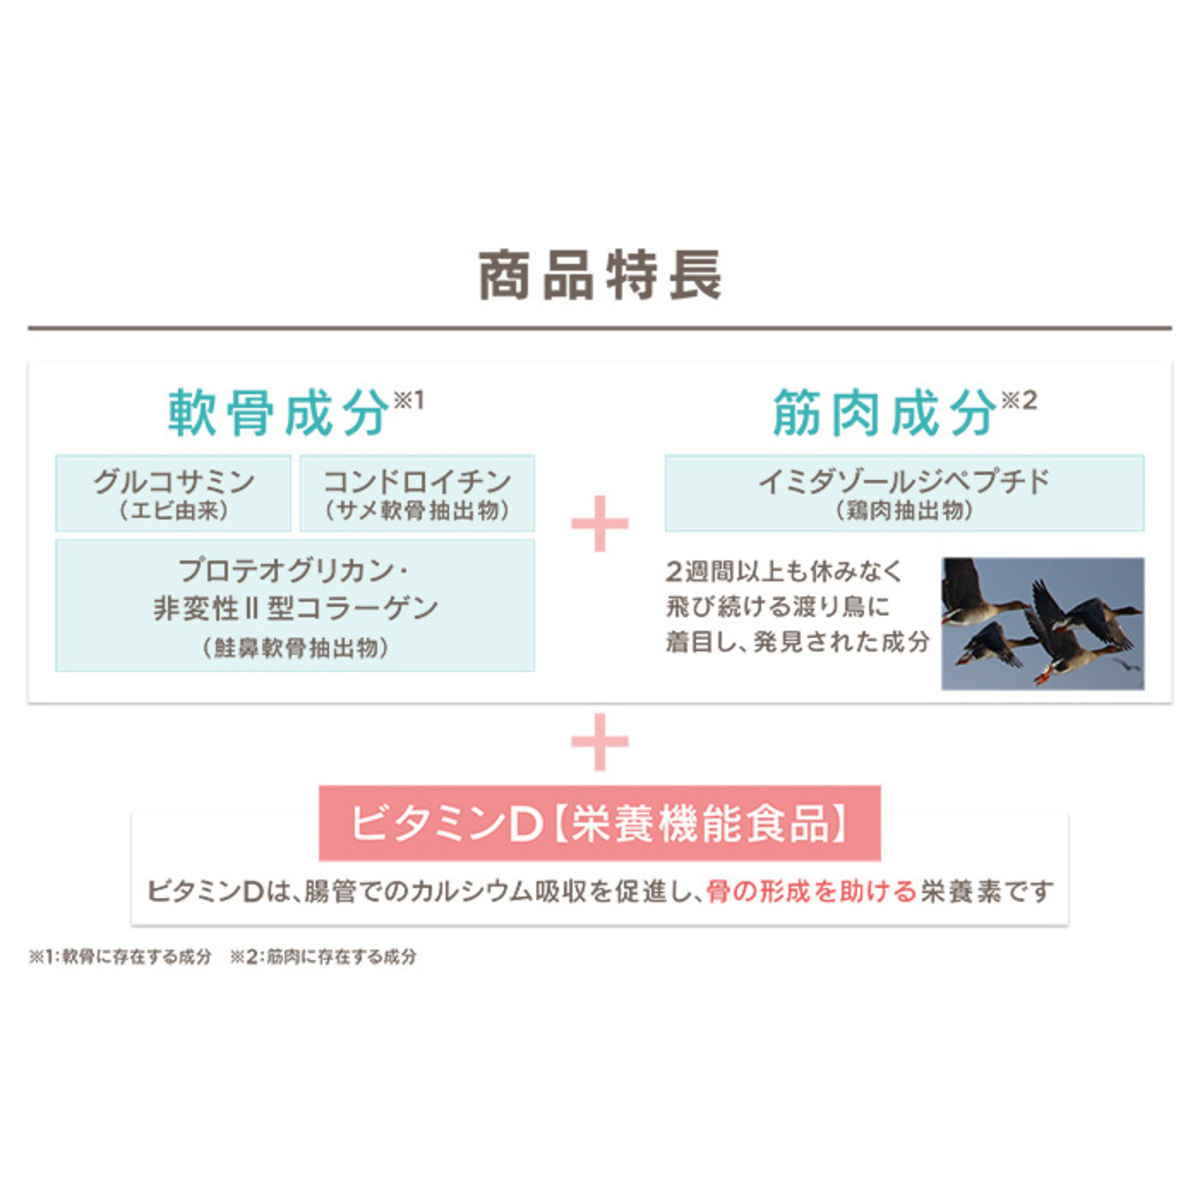 サプリ生活「グルコサミン+コンドロイチンEXロコモールD」 サプリ生活 - QVC.jp